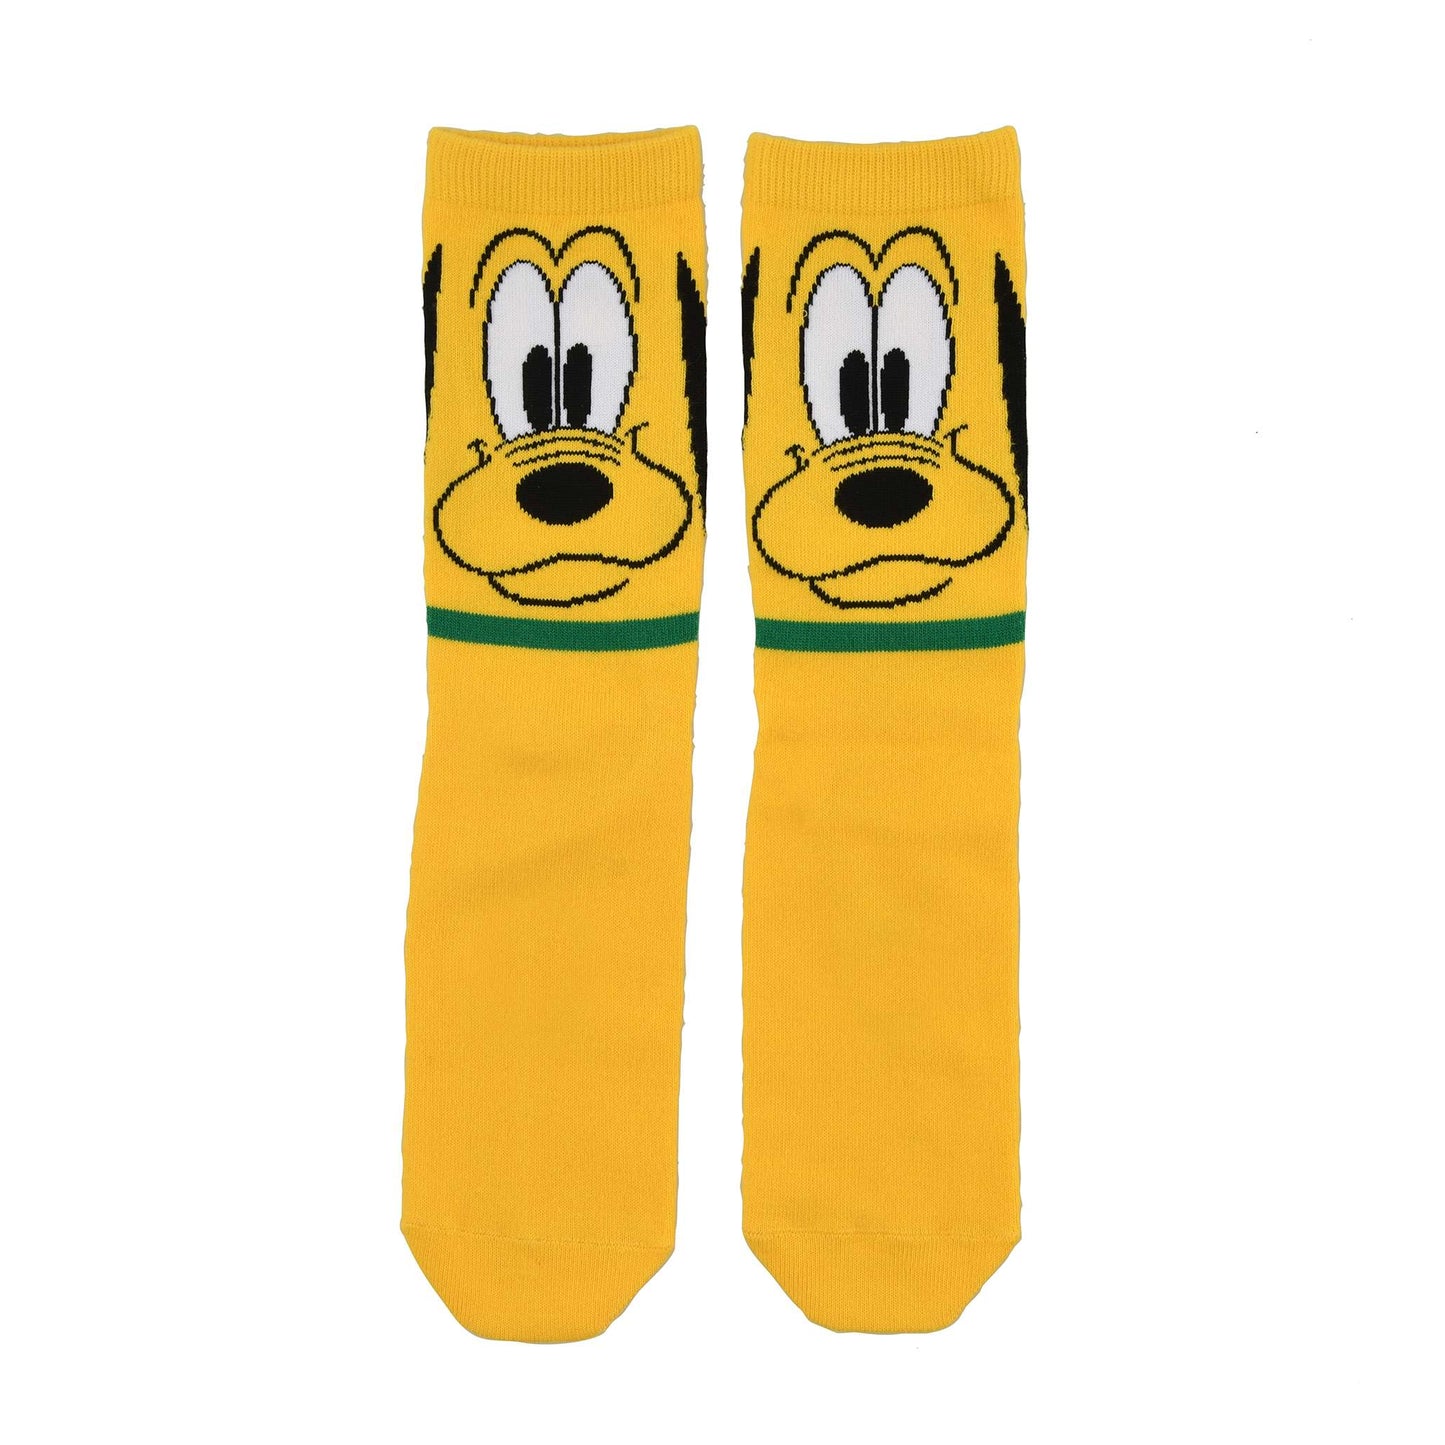 Disney Store - Pluto gelb 36-39 - Socken